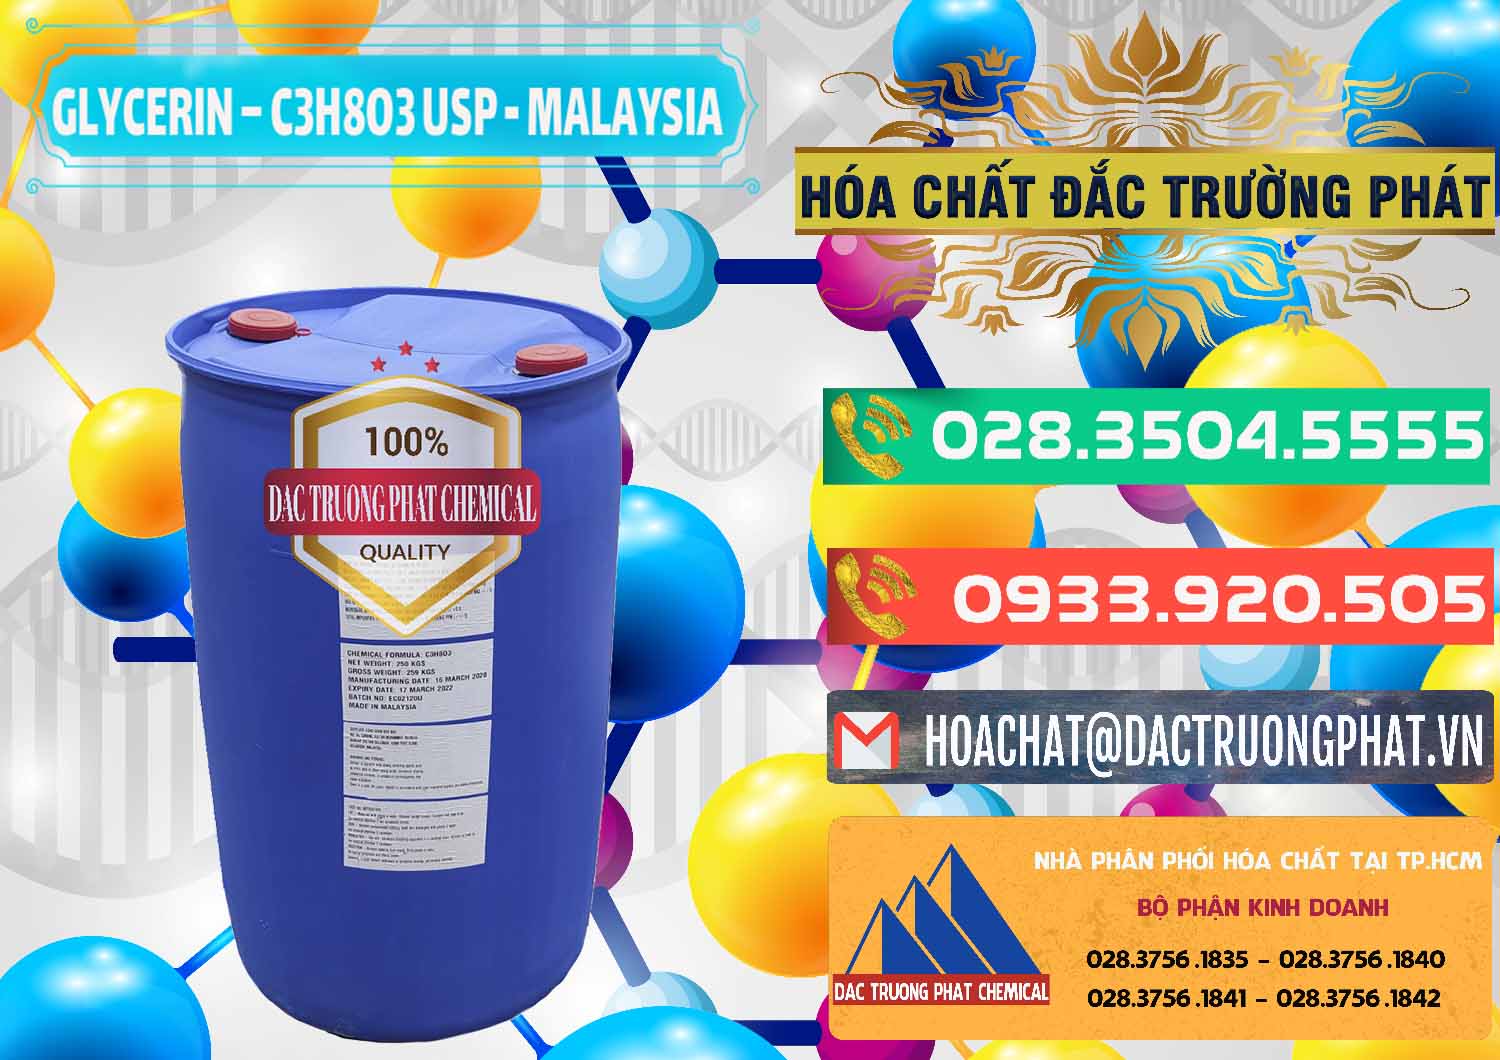 Nơi chuyên bán và cung ứng Glycerin – C3H8O3 USP Malaysia - 0233 - Cty kinh doanh ( cung cấp ) hóa chất tại TP.HCM - congtyhoachat.com.vn